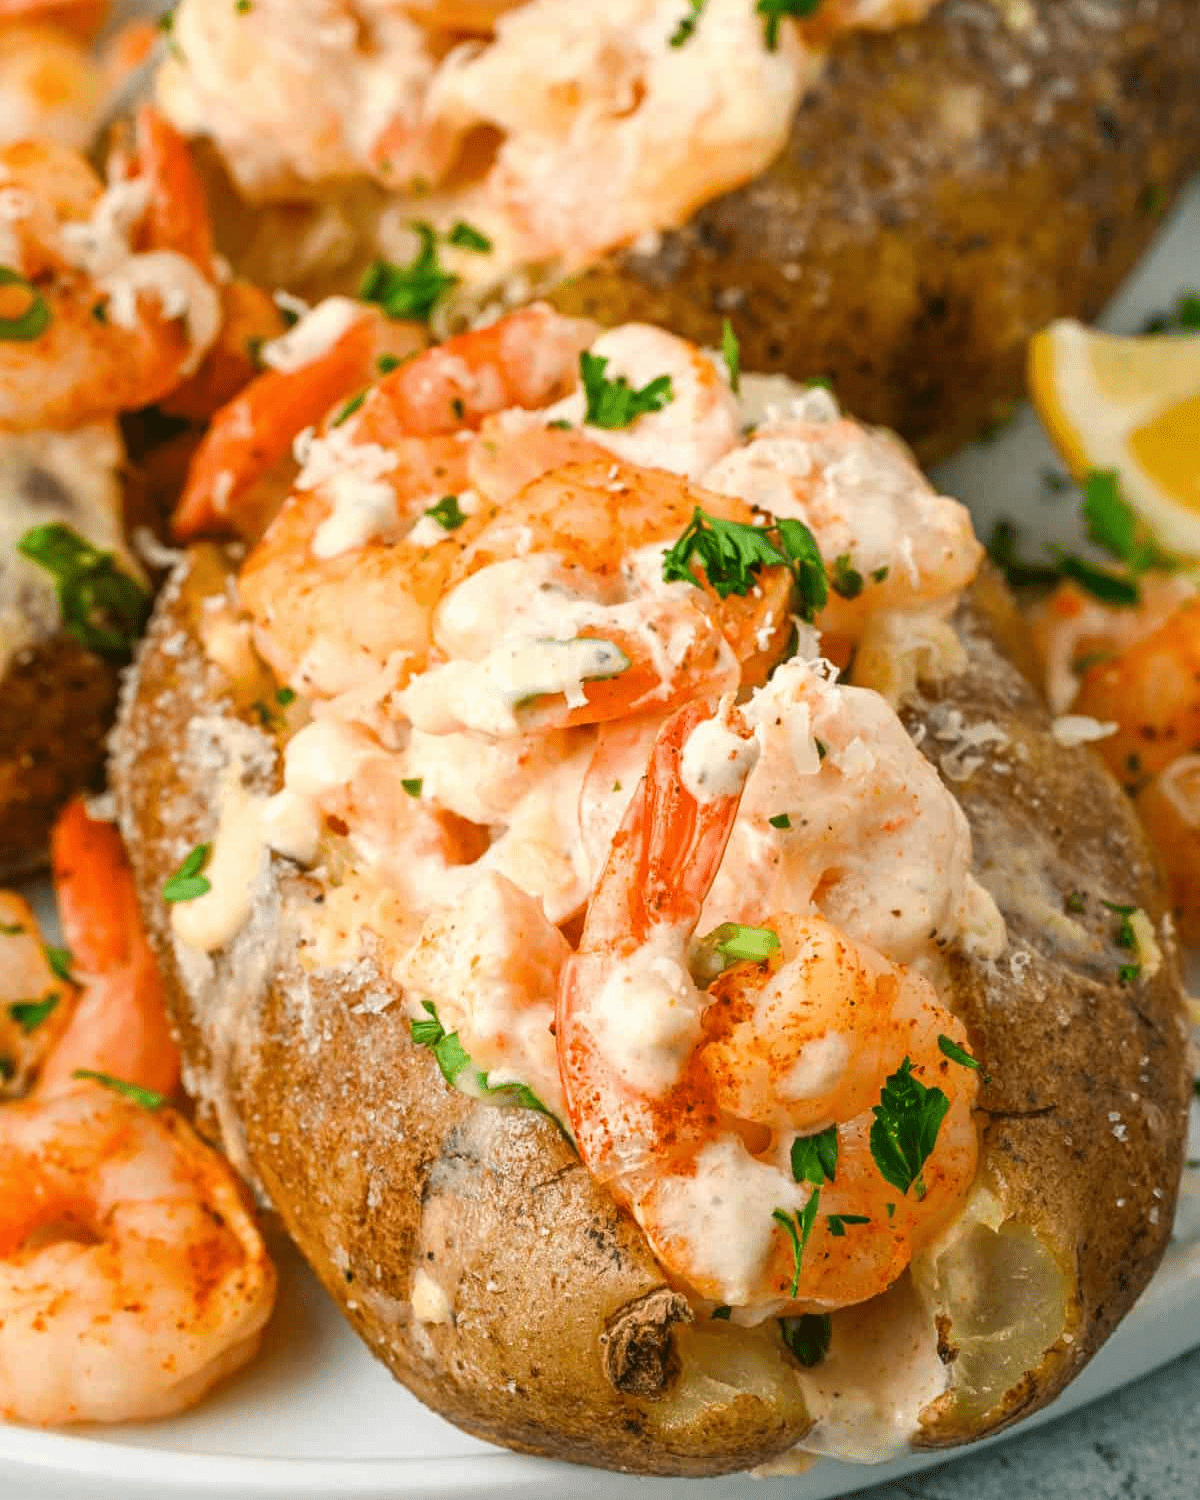 Cajun shrimp stuffed baked potatoes.